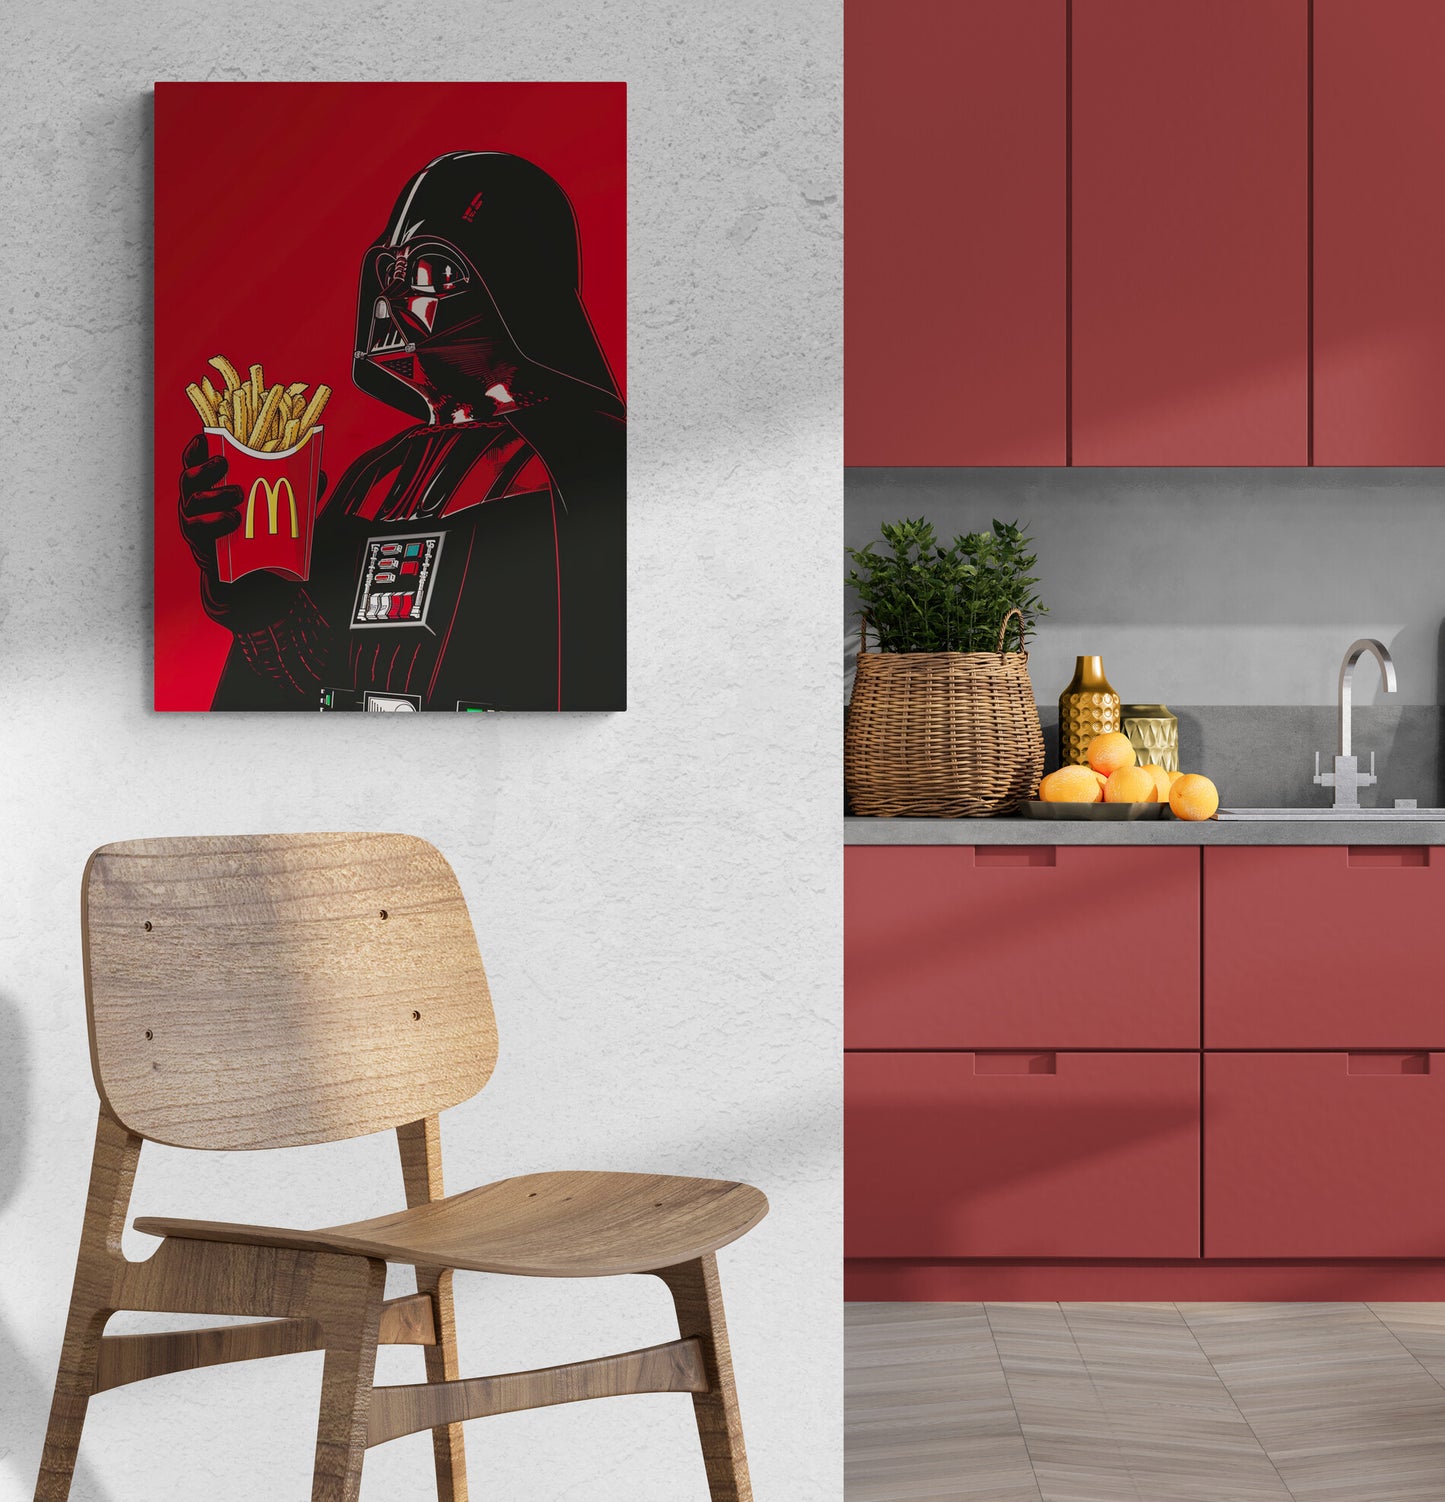 Tableau de style Star Wars pop art suspendu au-dessus d'un comptoir de cuisine rouge.